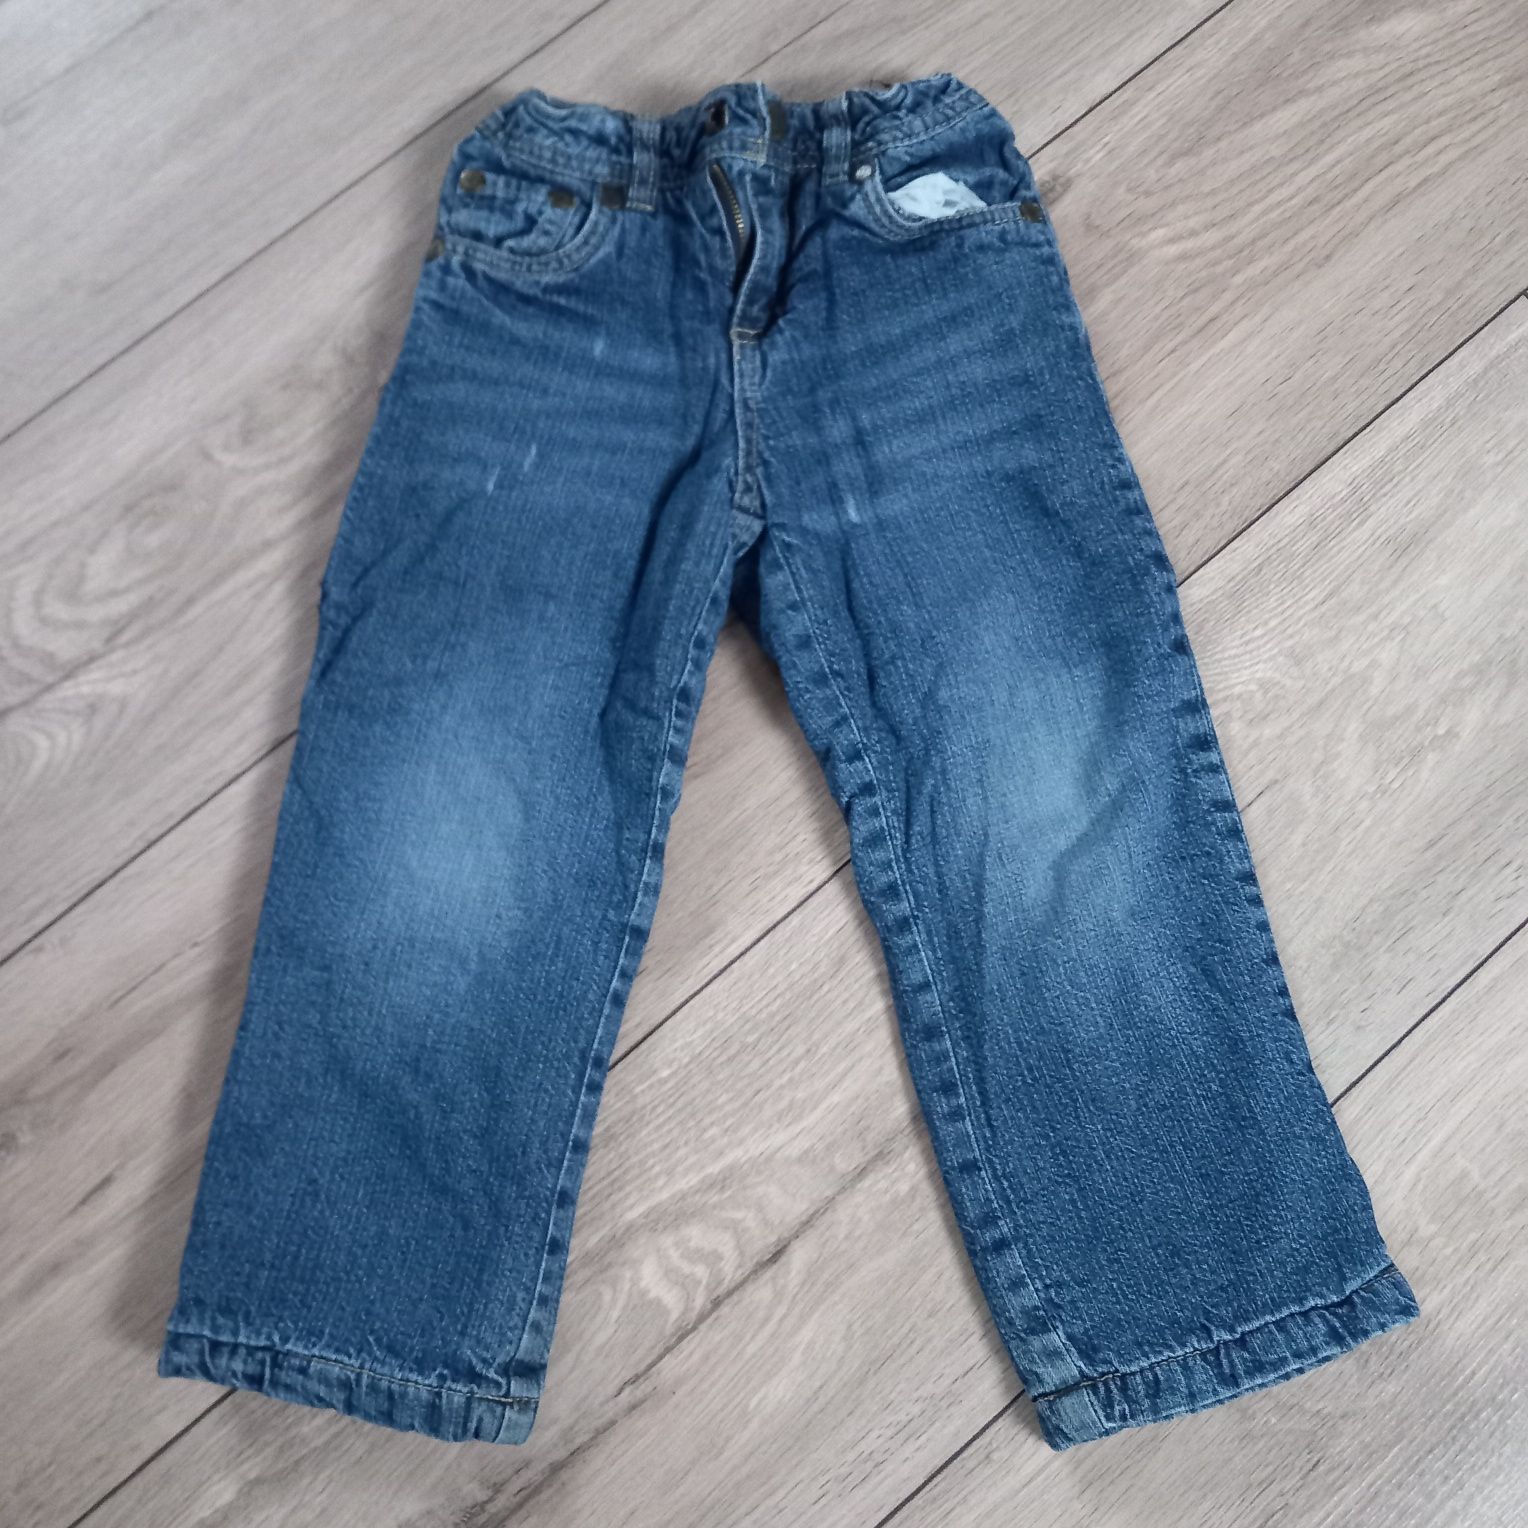 SPODNIE OCIEPLANE JEANSOWE 98/104 na polarze jeansy